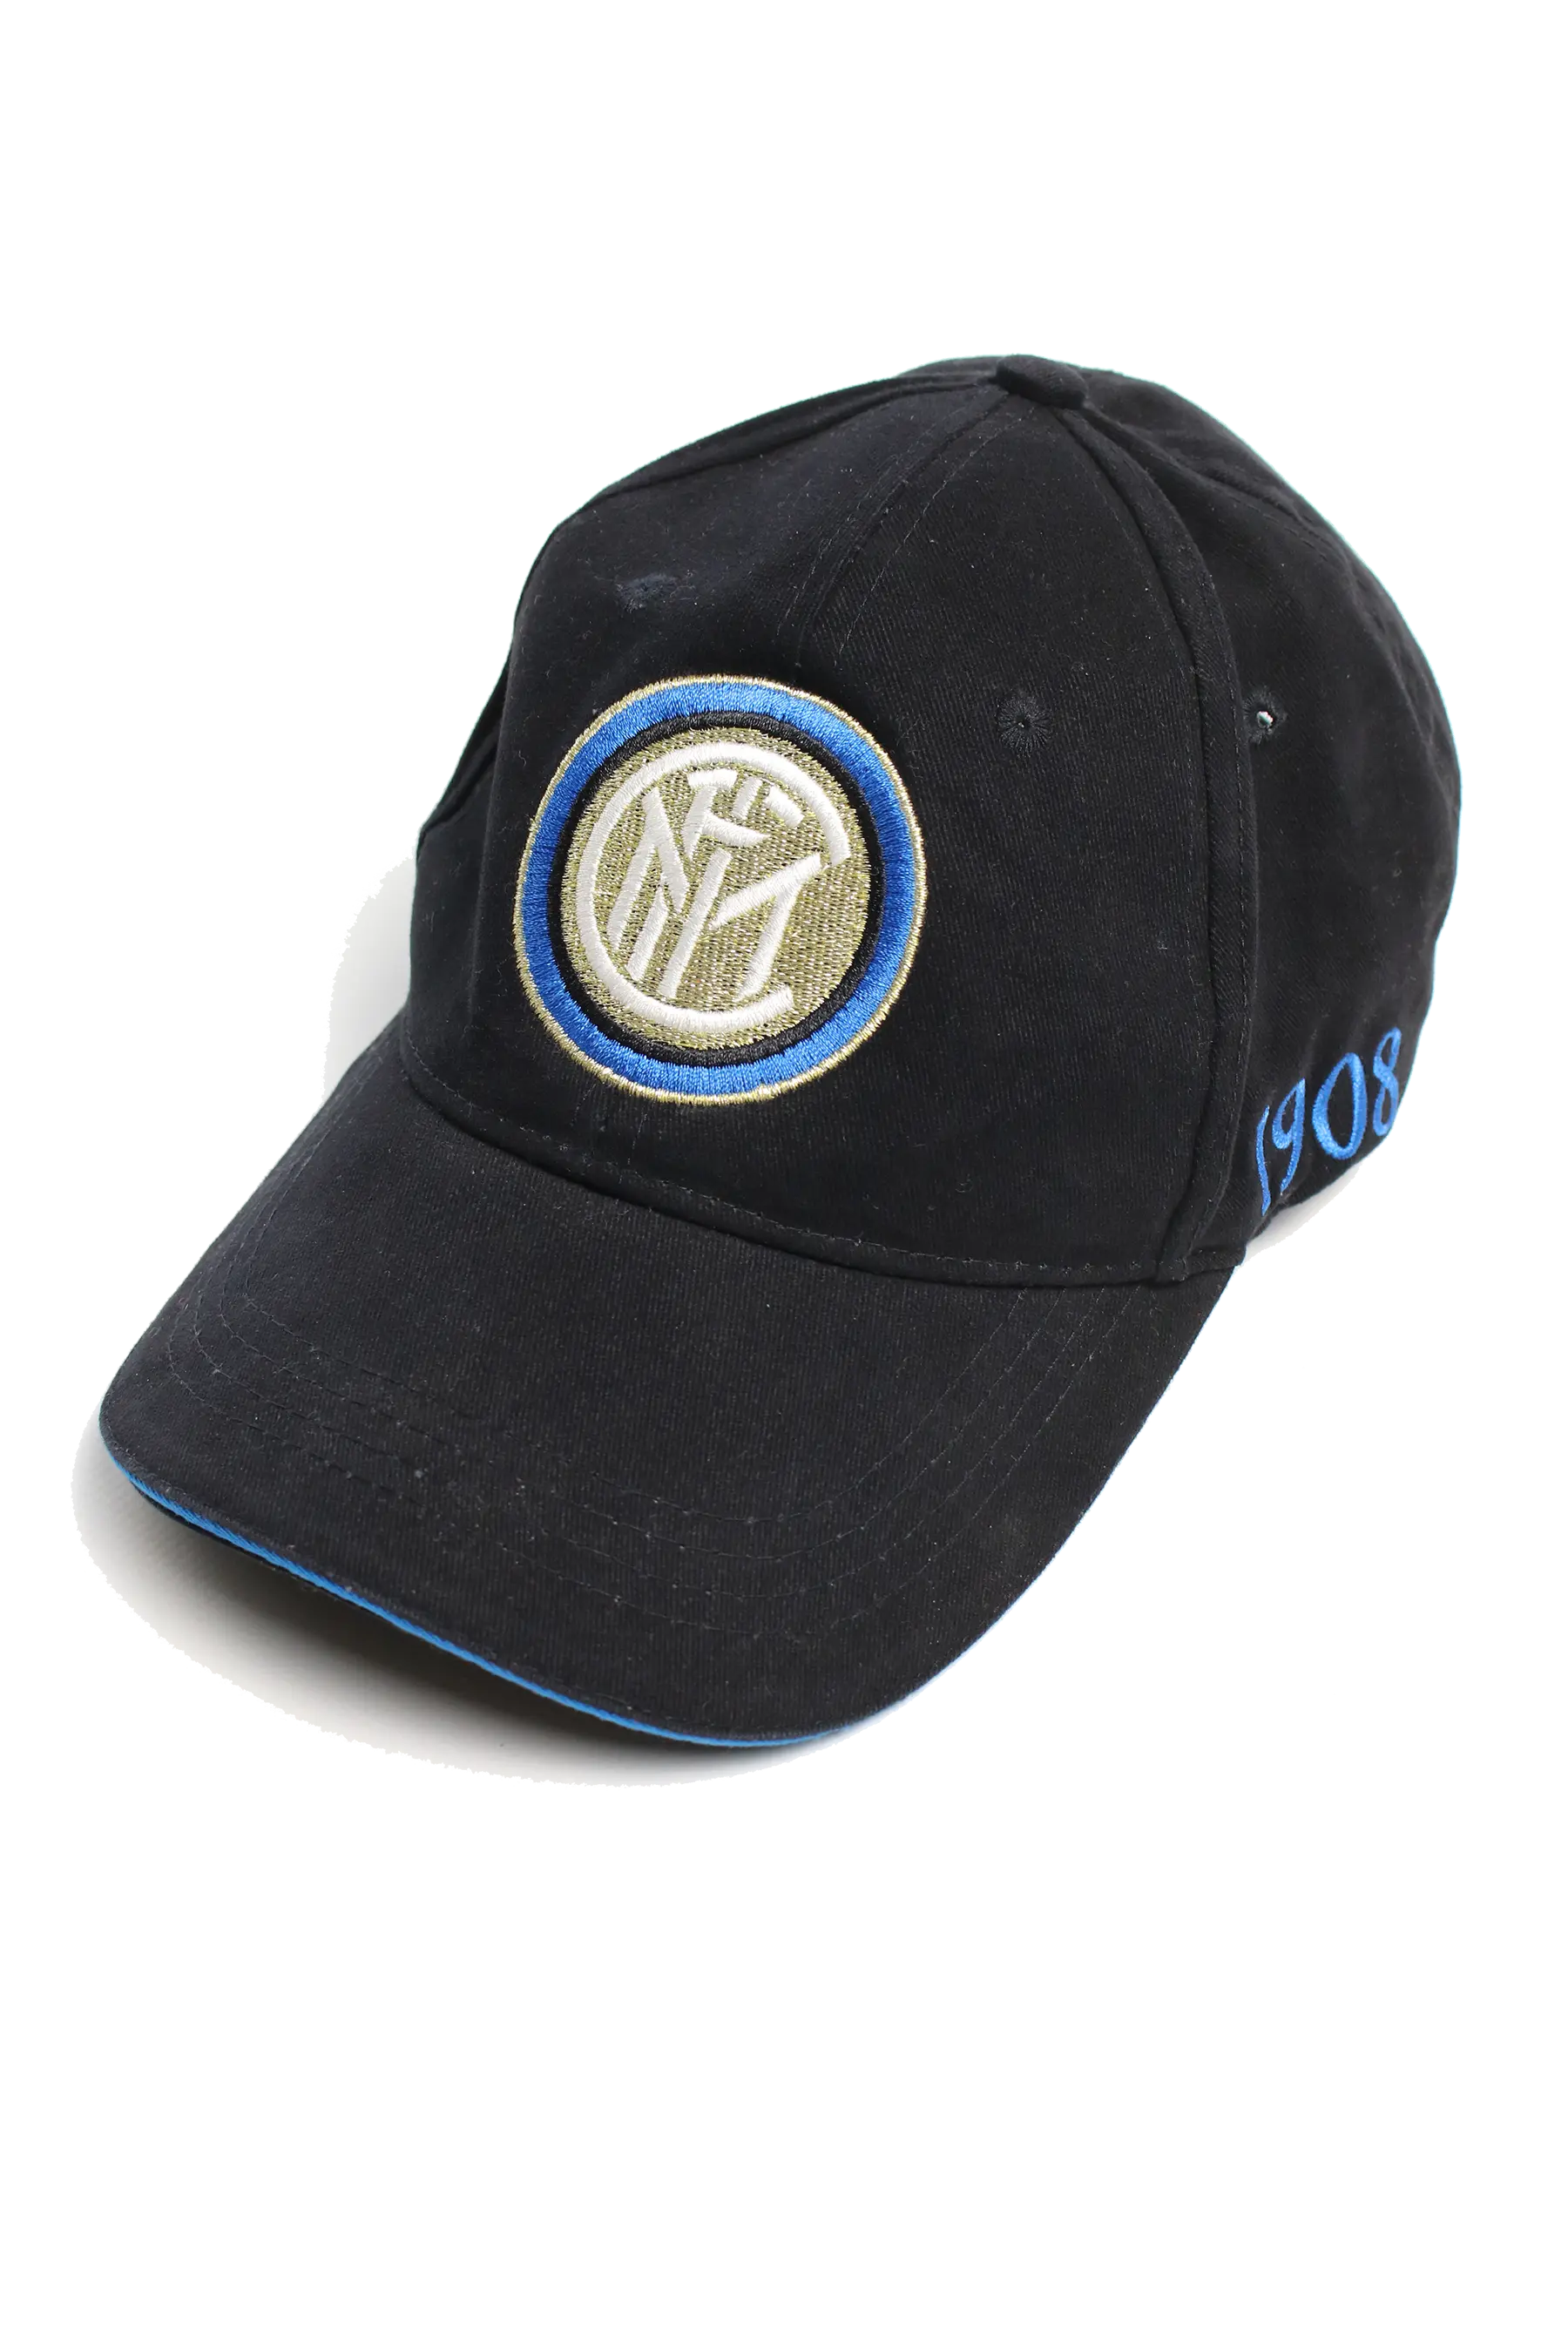 Inter Mailand Cap